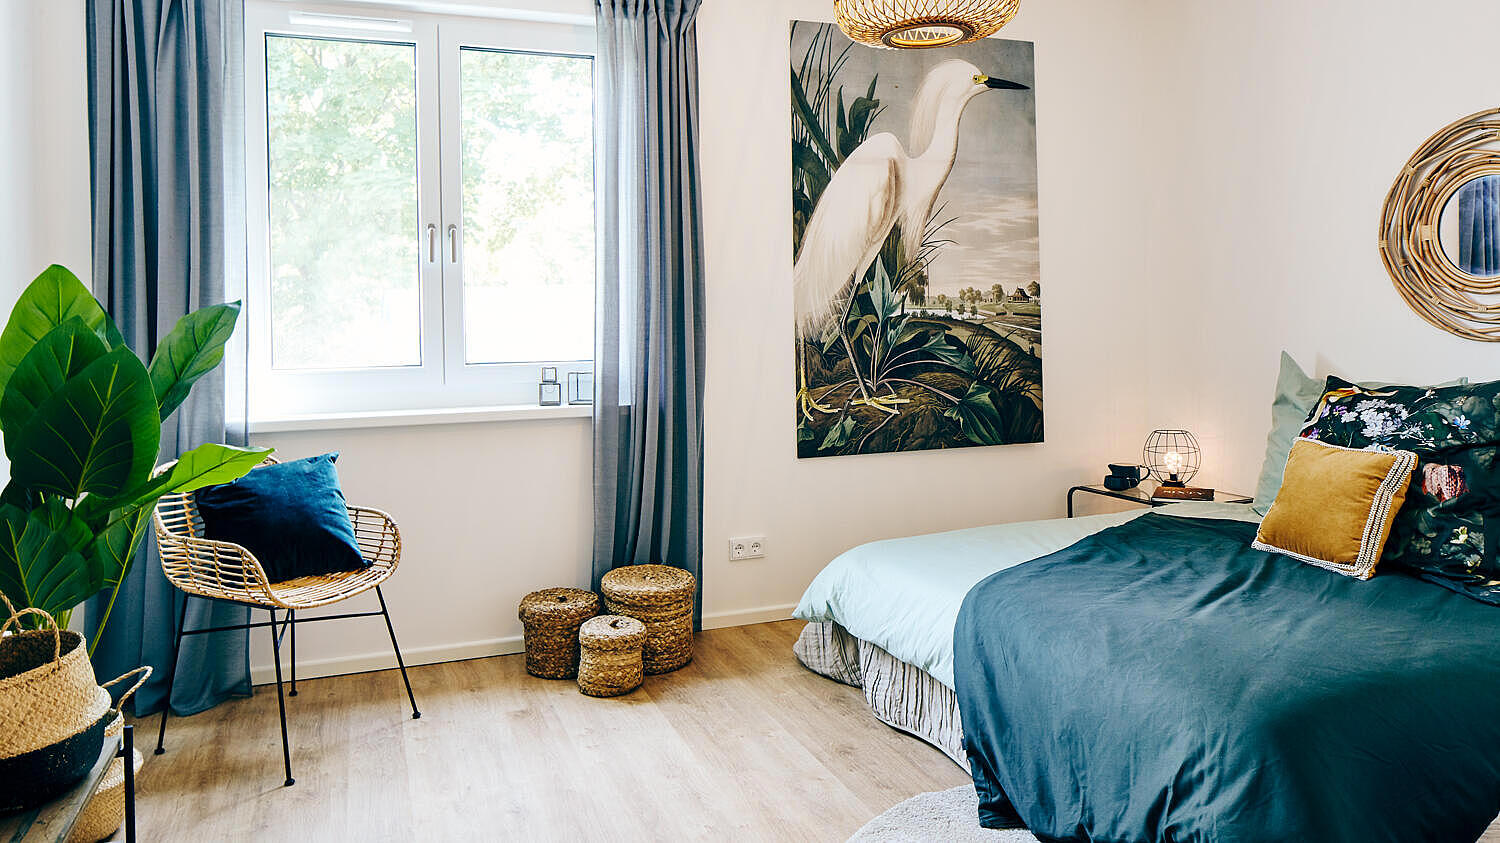 Musterwohnung im Quartier Stadtgut Hellersdorf: möbliertes Schlafzimmer